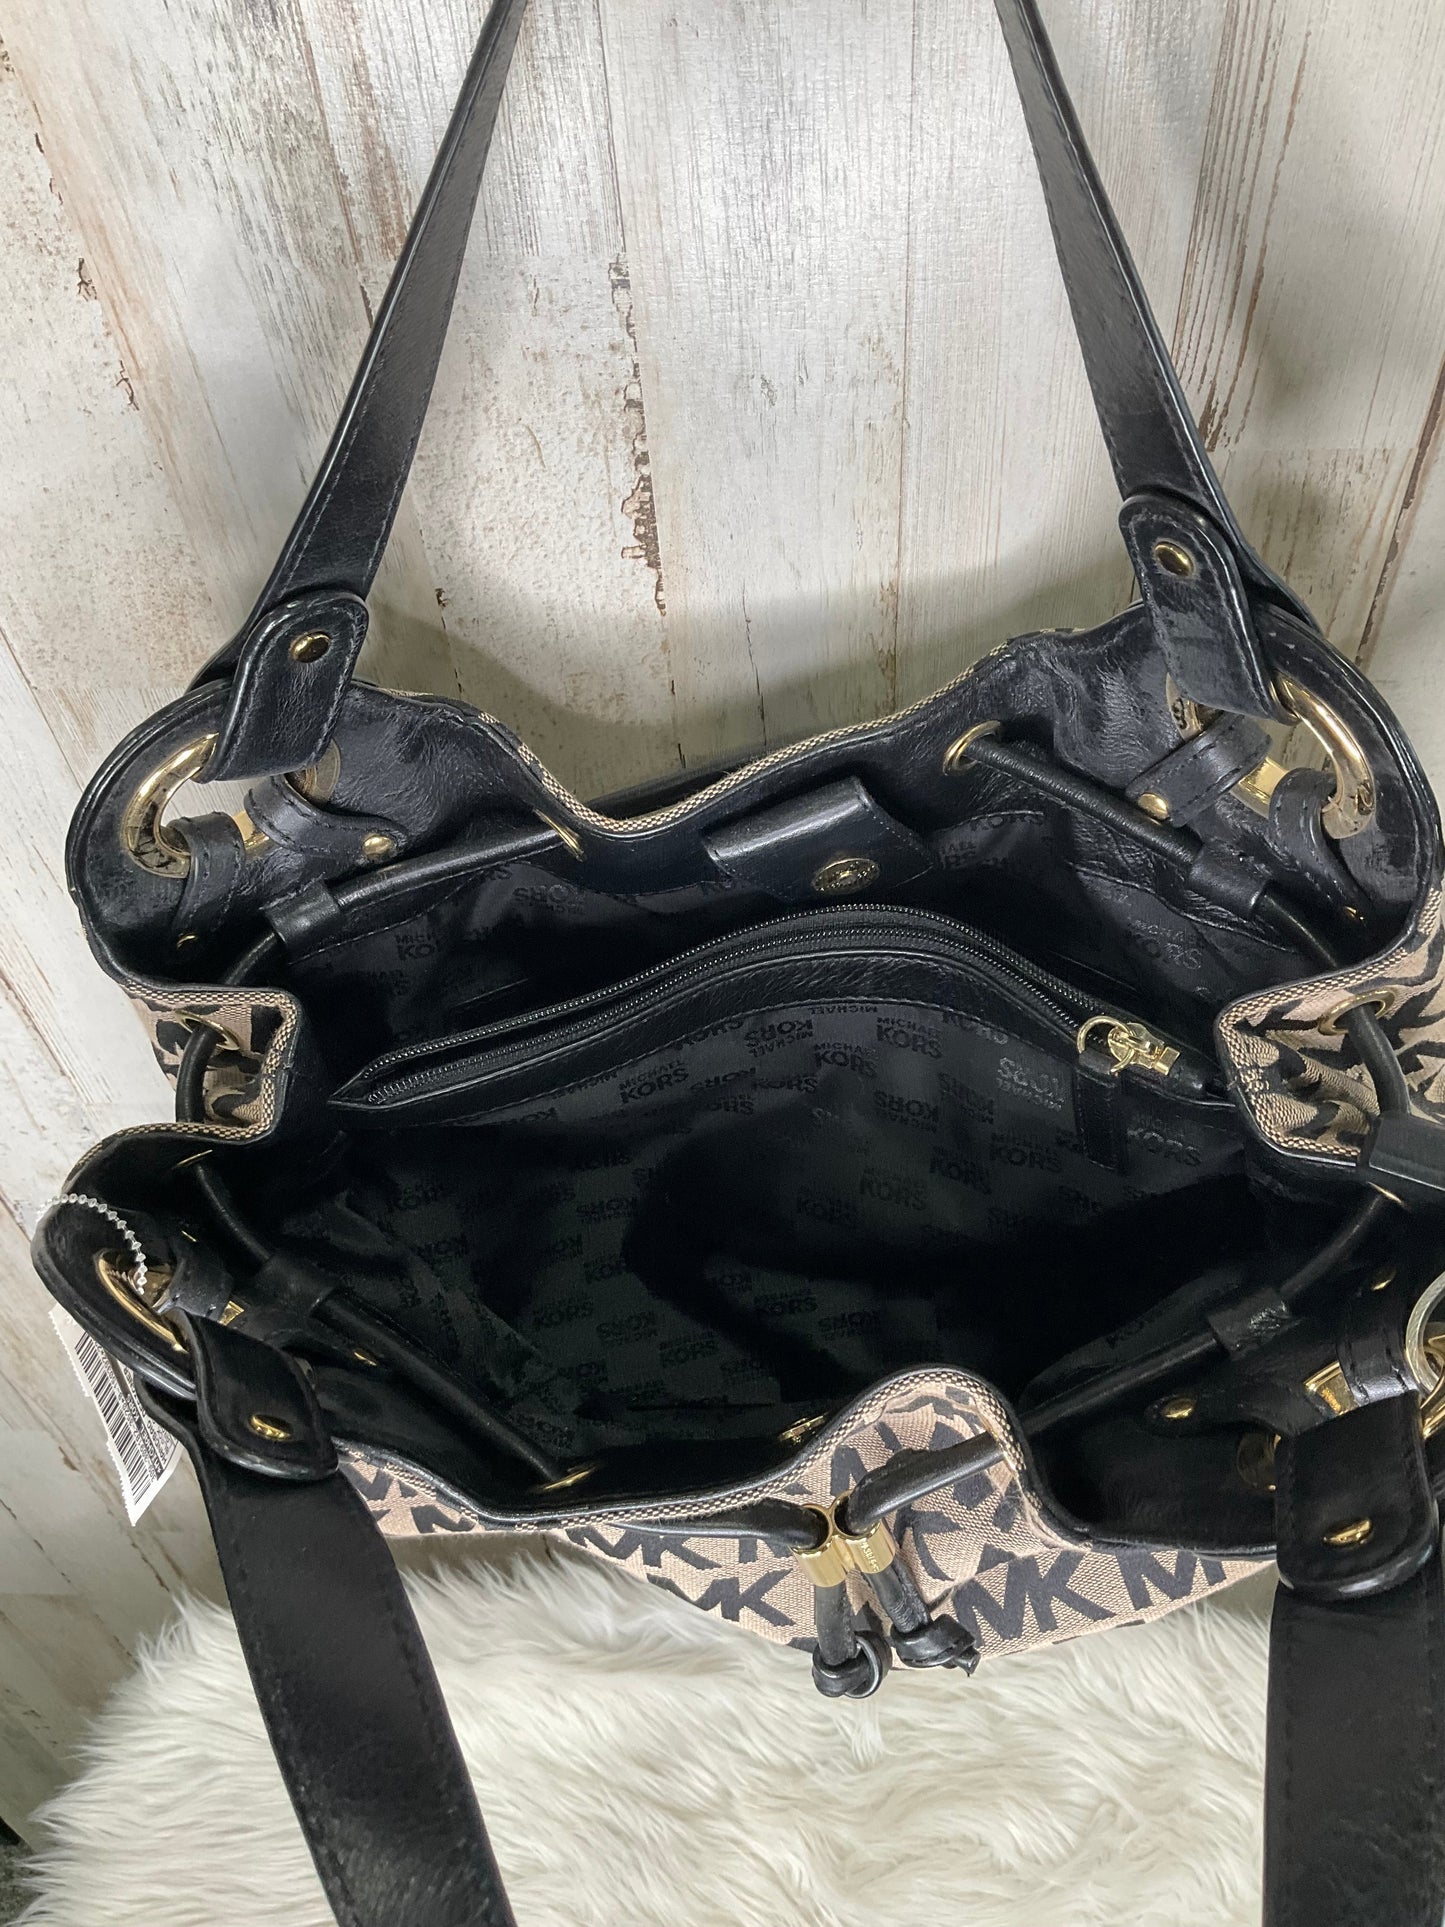 Handbag Designer By Michael Kors  Size: Large